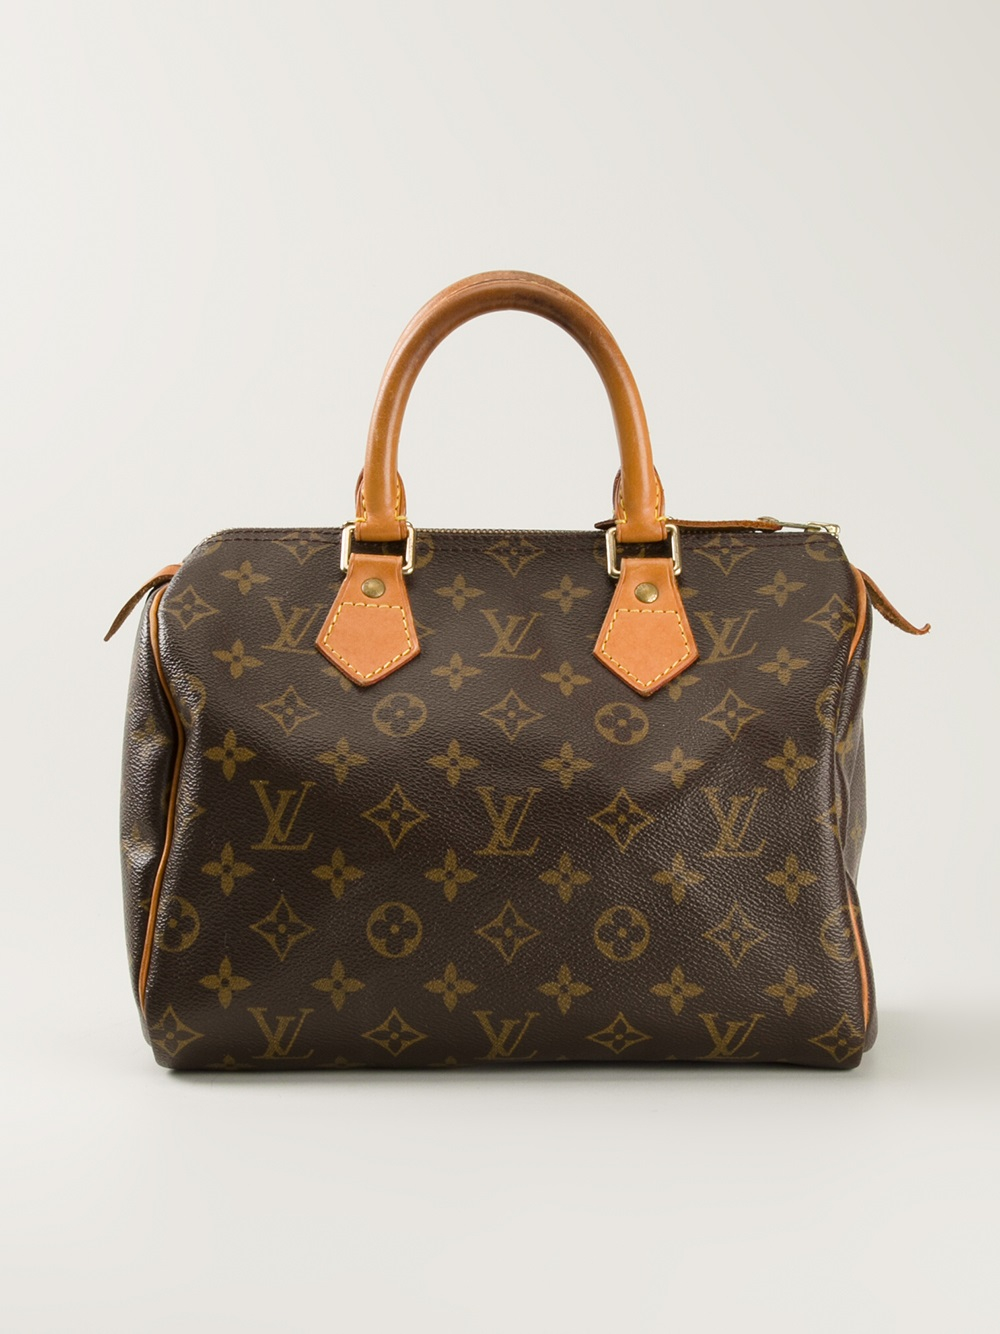 Lyst - Louis Vuitton Speedy 25 Monogrammed Bag in Brown